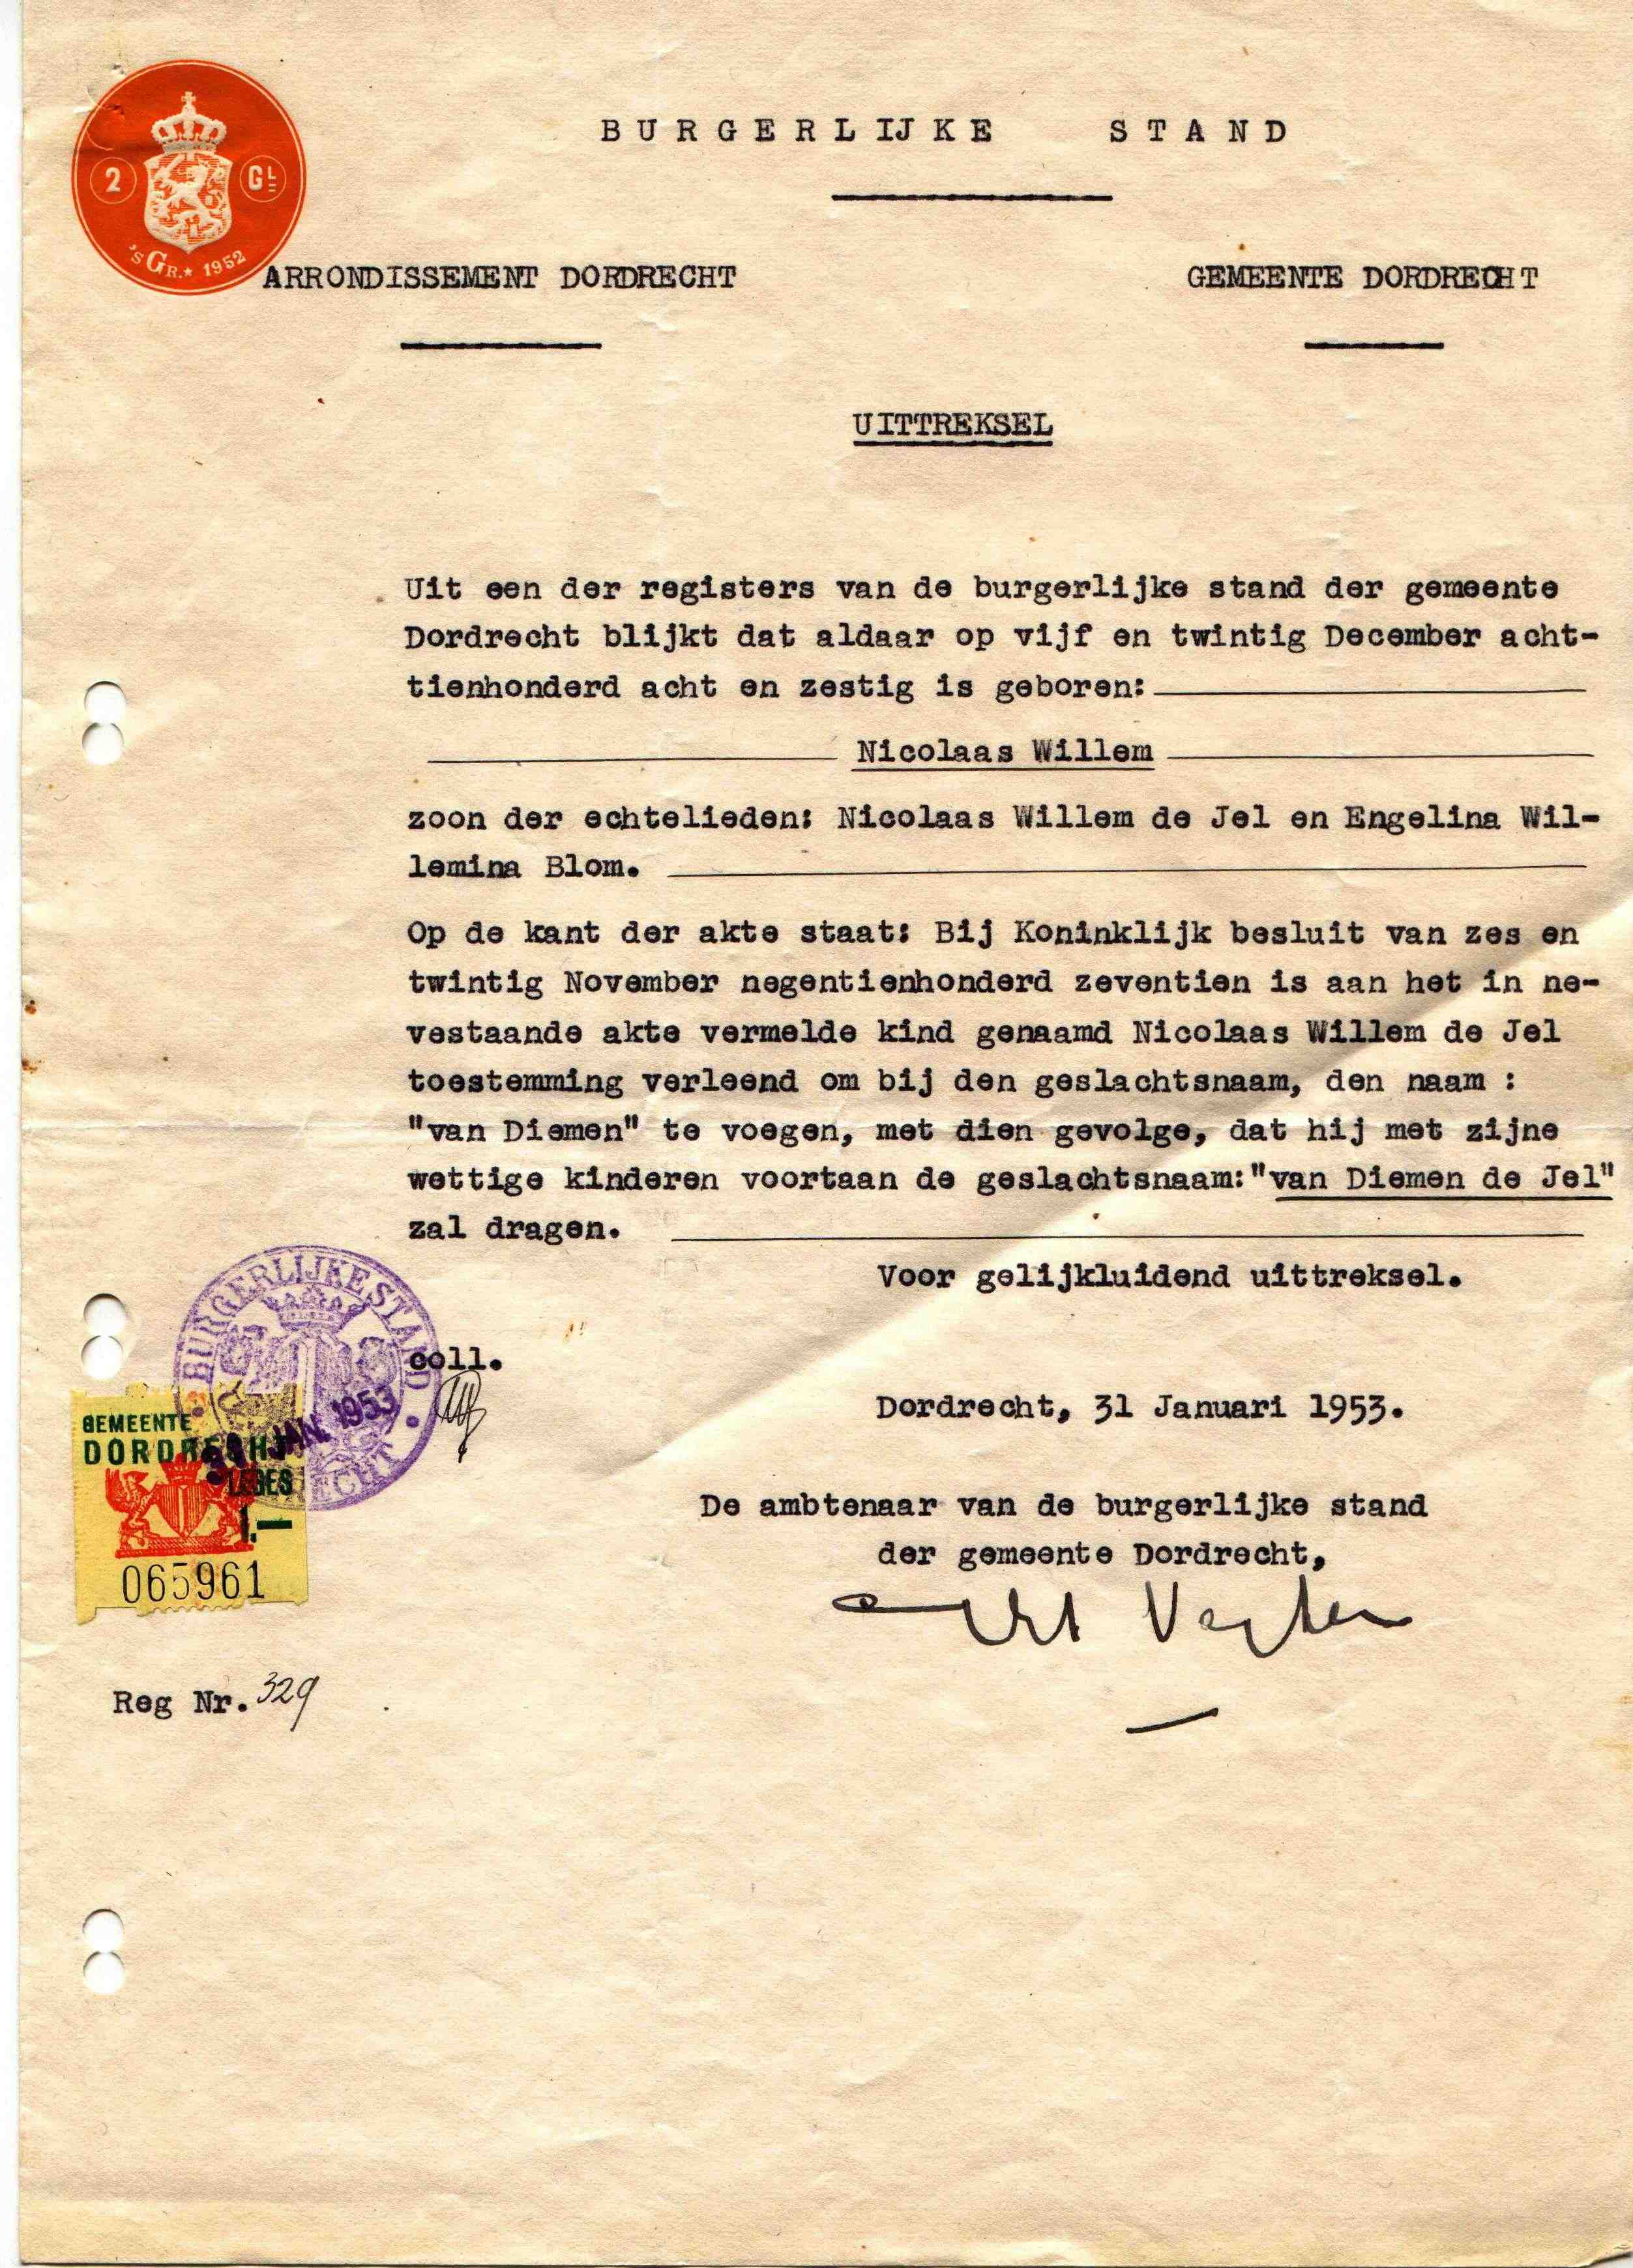 Extract from Public Records on the name Van Diemen de Jel